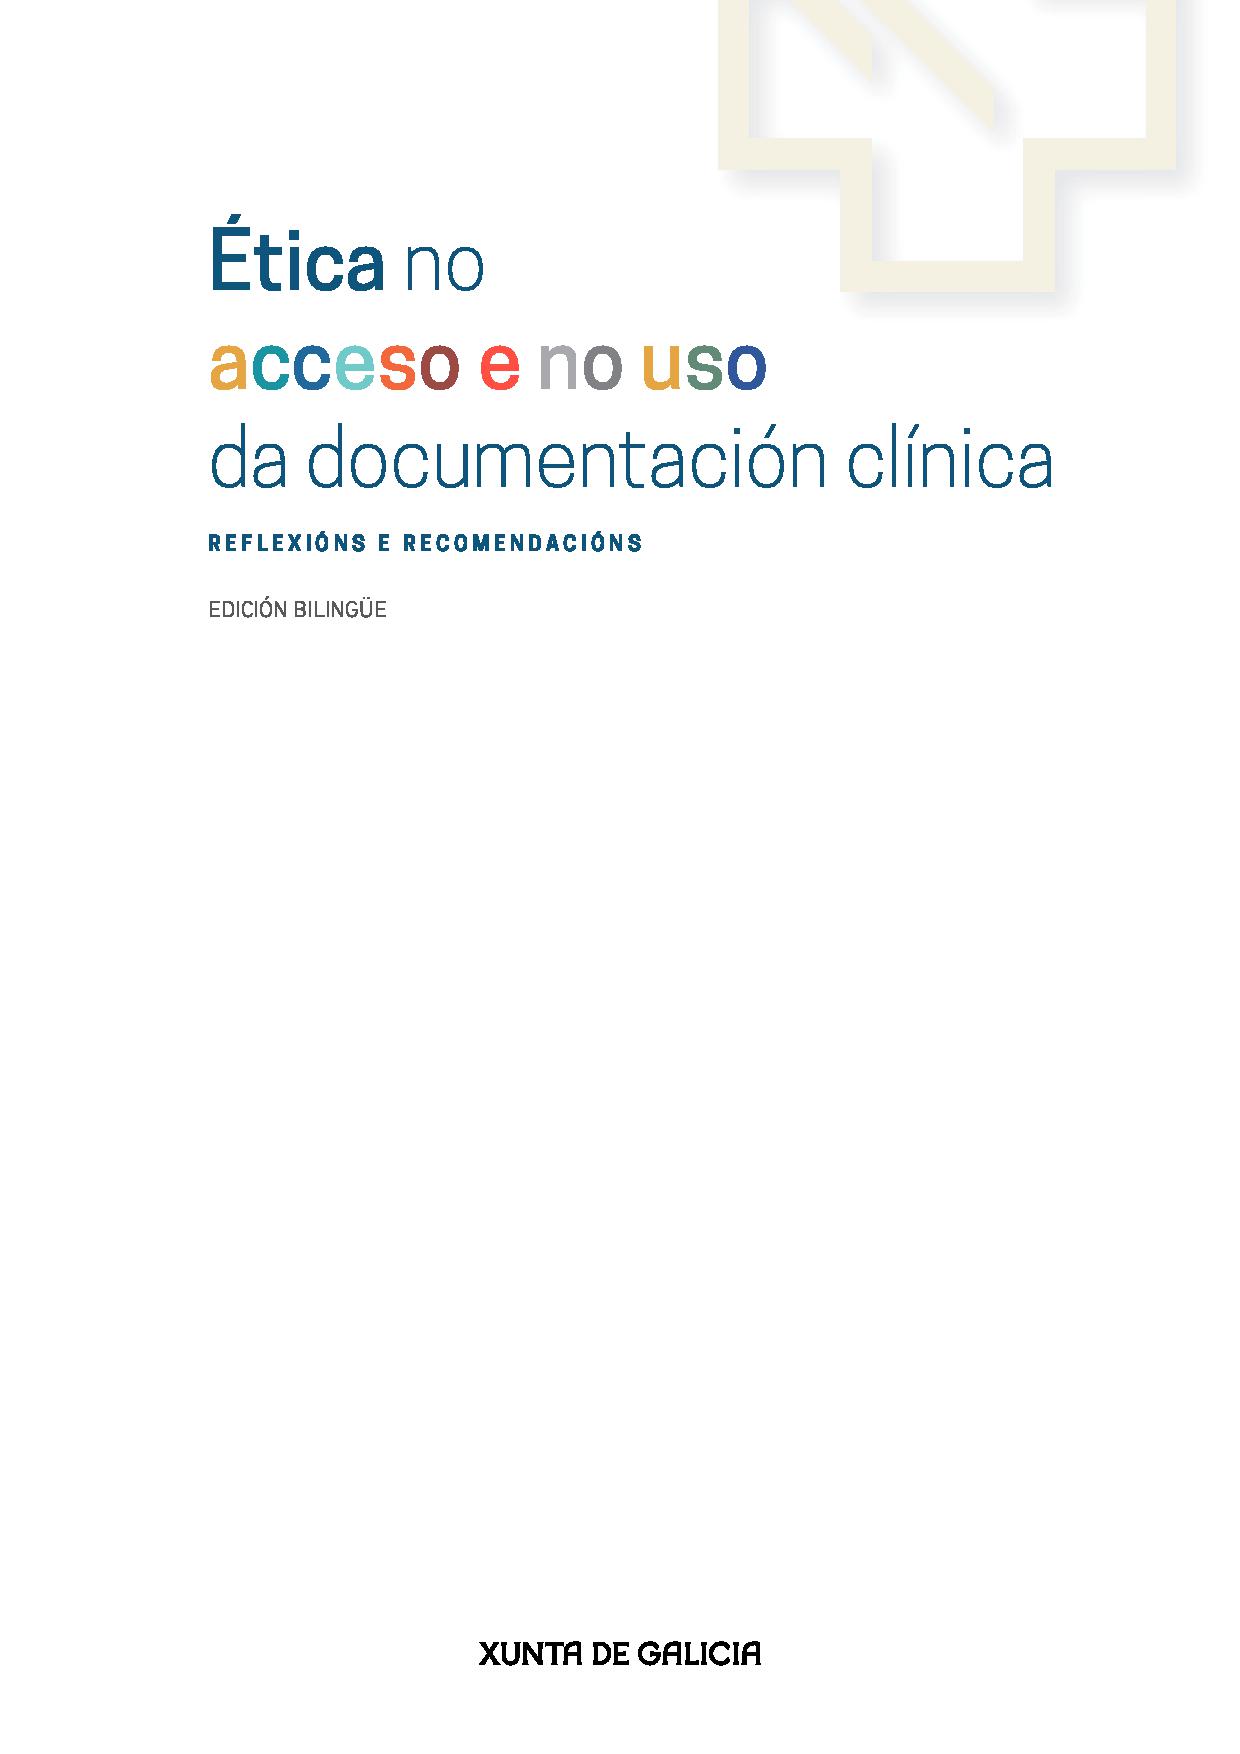 Imagen de portada del libro Ética no acceso e no uso da documentación clínica